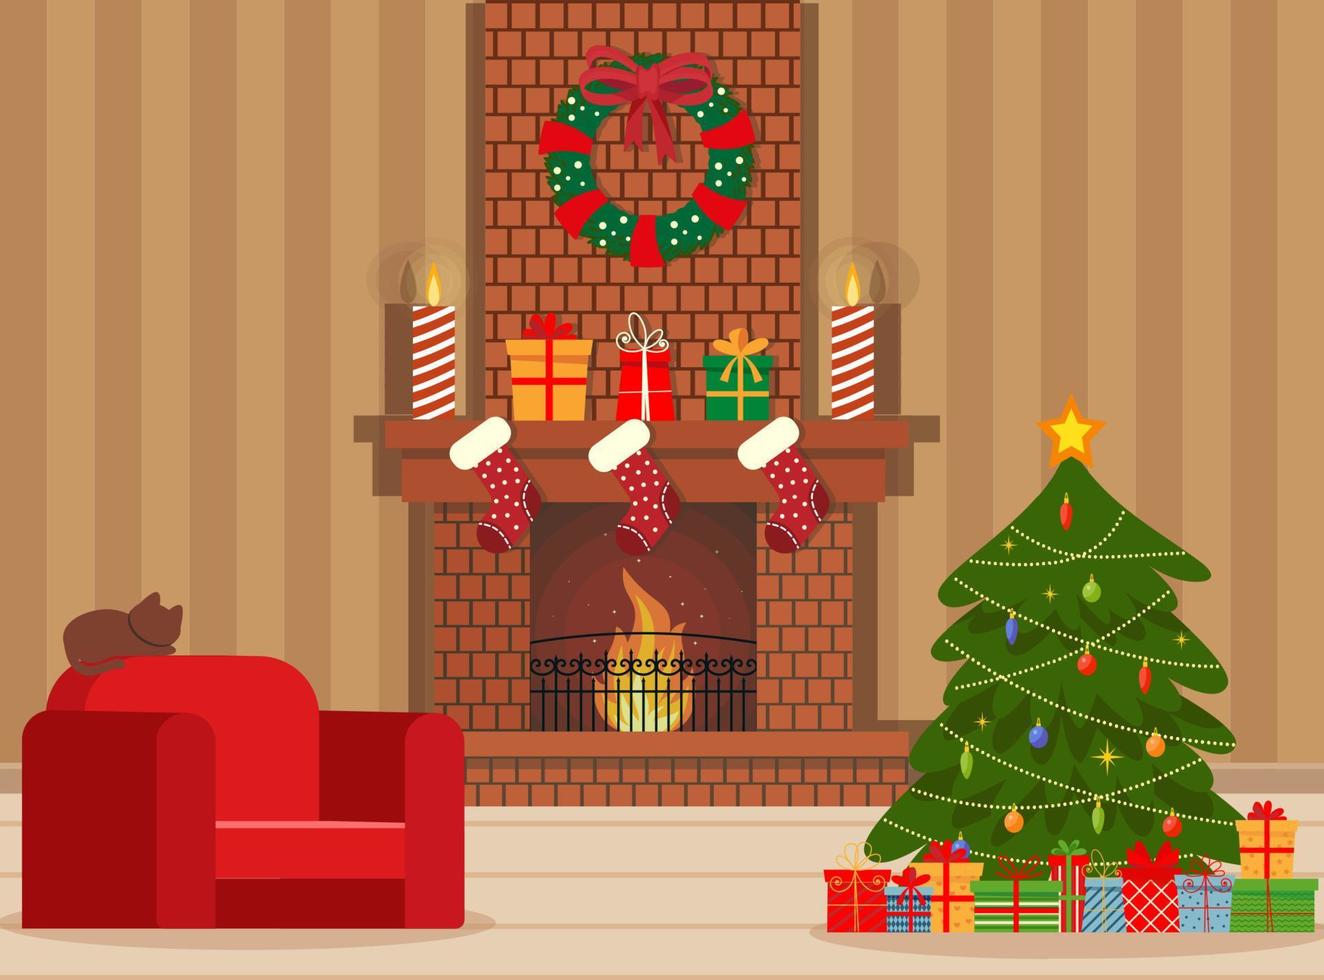 aconchegante vida interior natal com sofá vermelho, presentes e árvore. ilustração vetorial de estilo simples. vetor